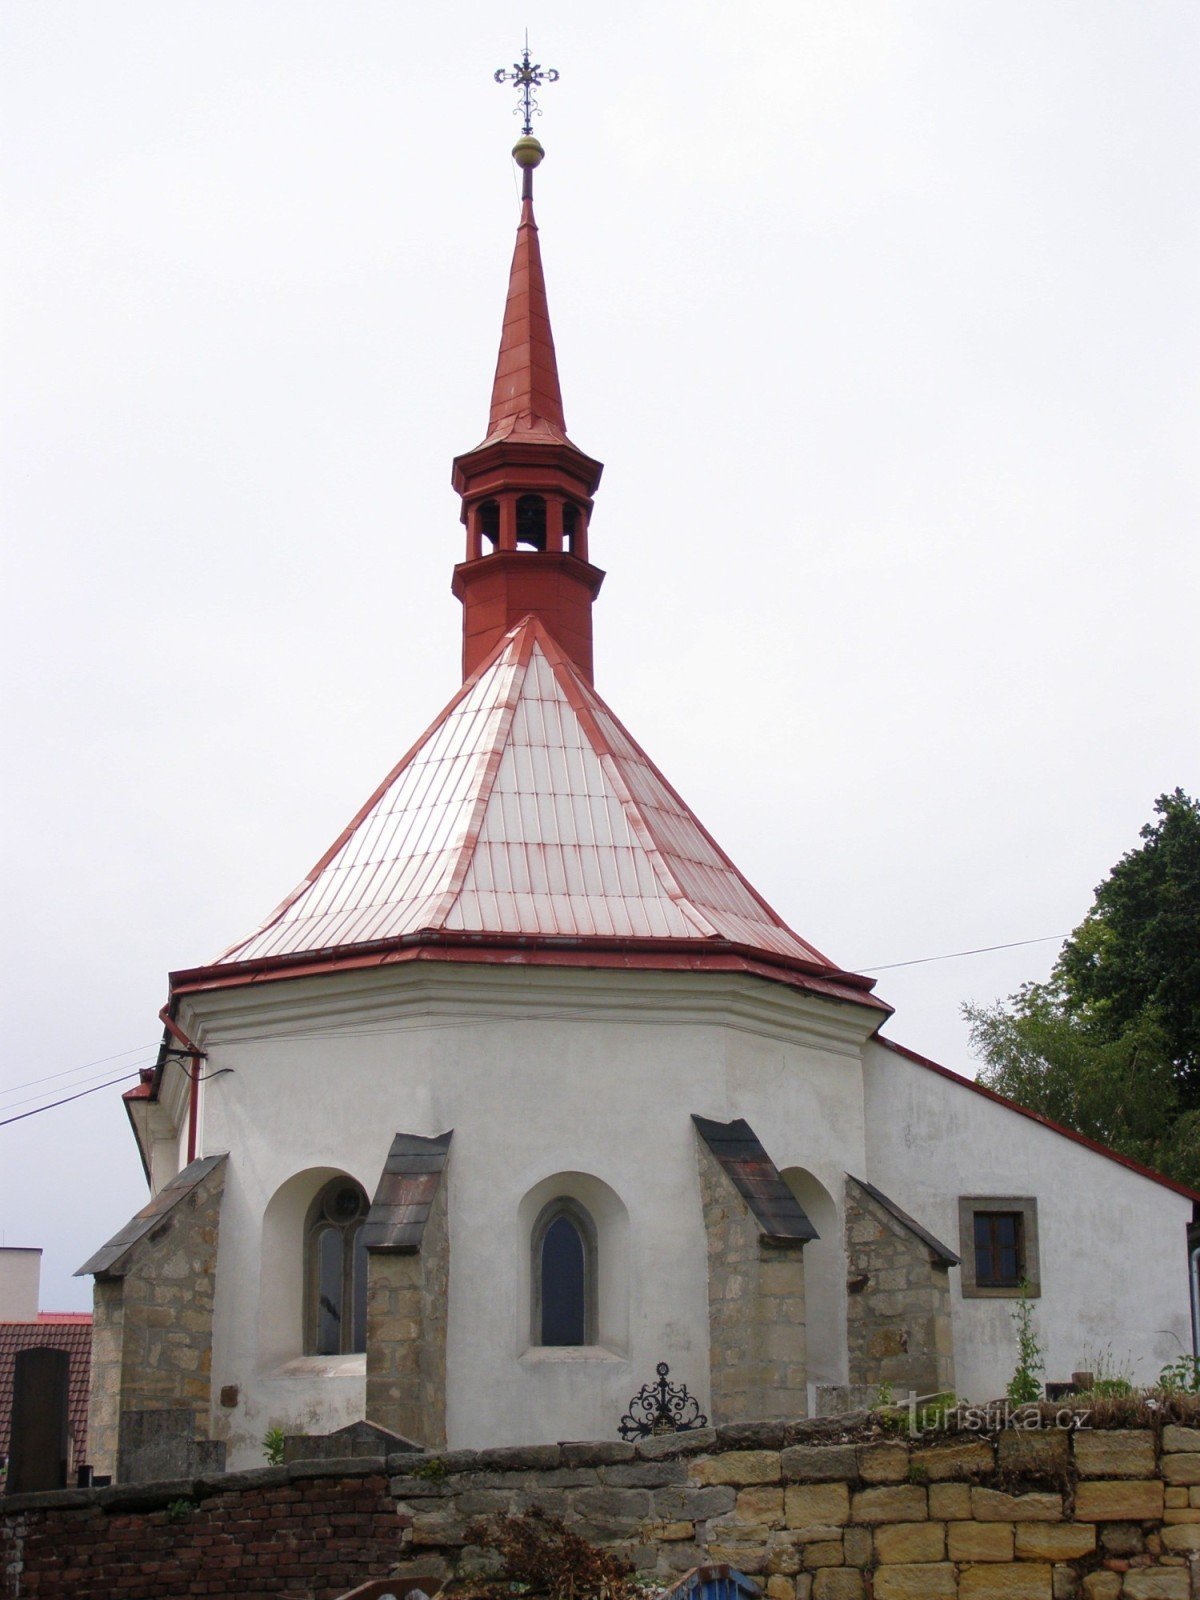 Mladějov - nhà thờ Thánh Giljí với tháp chuông